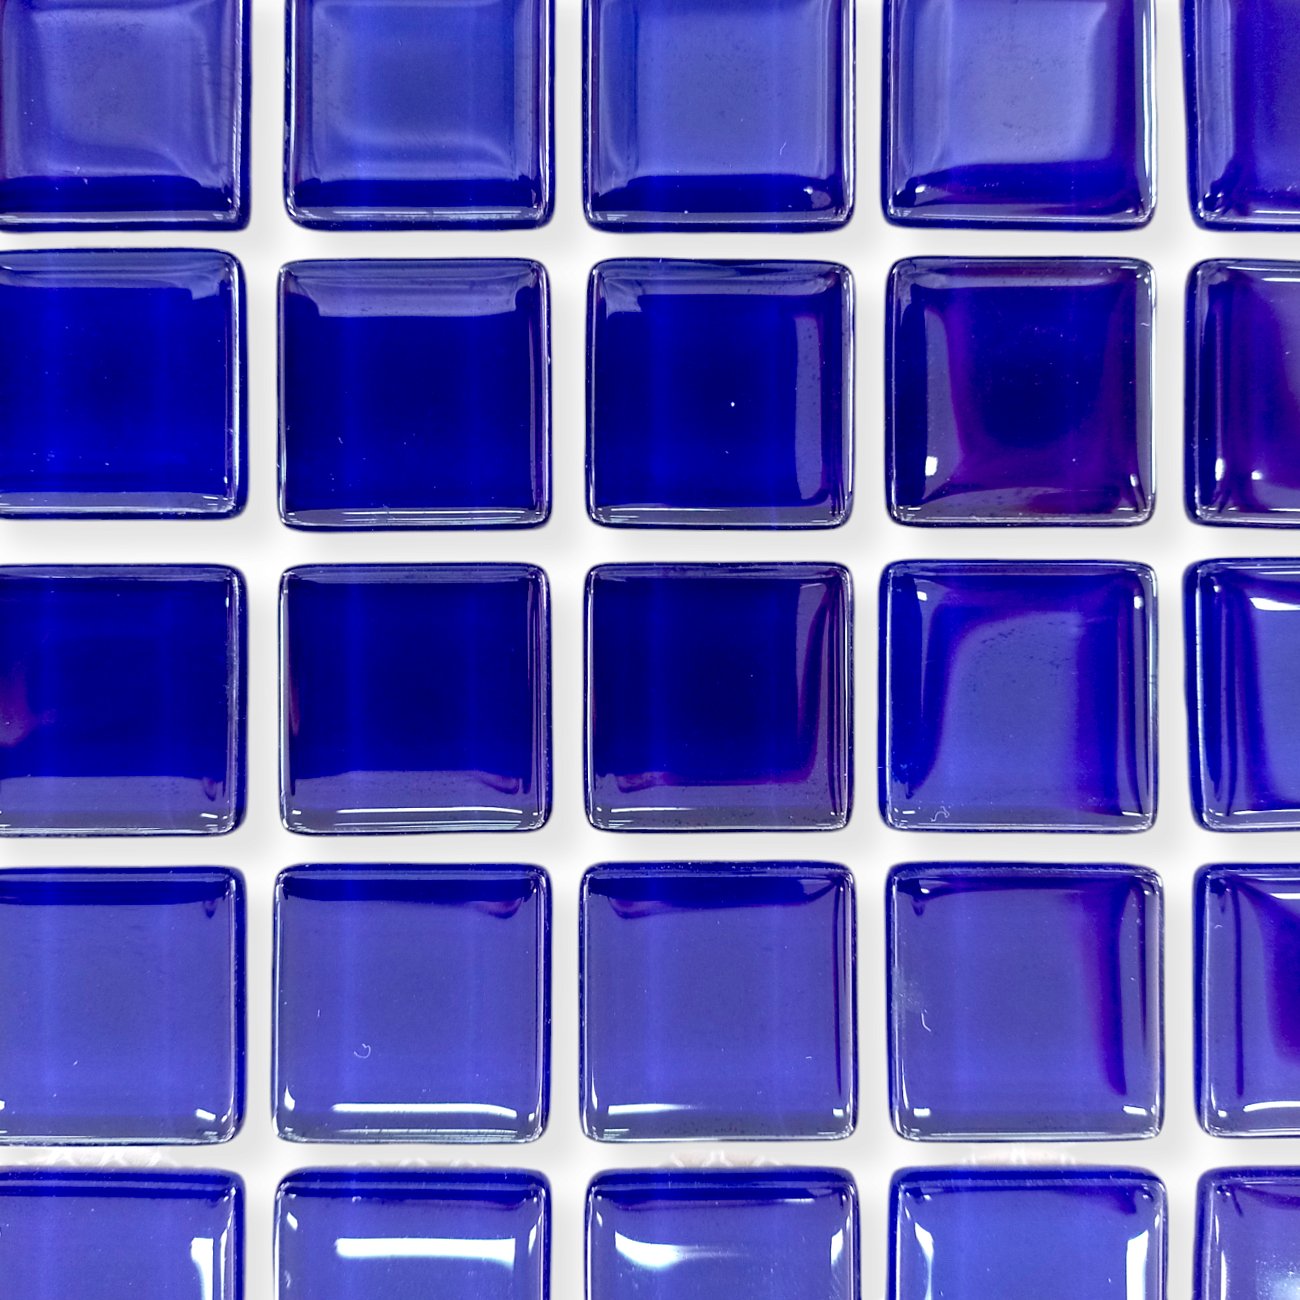 Pastilha  em Vidro Iris Azul Royal para Ambientes Internos, Externos e Piscinas - Portinari